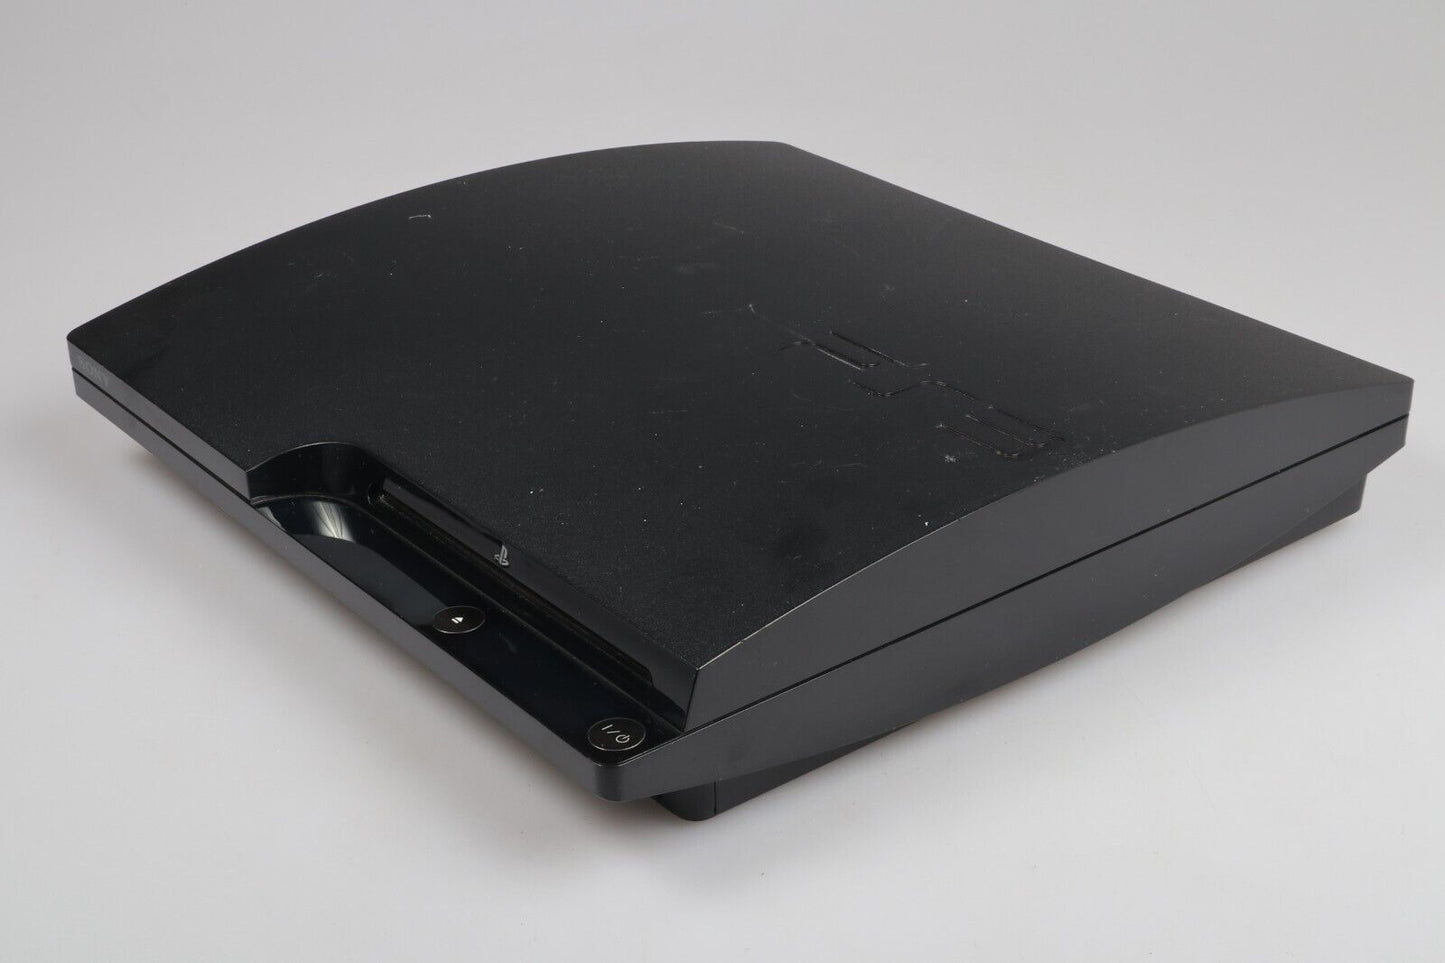 Playstation 3 | Console CECH-2004B 250GB Bundle